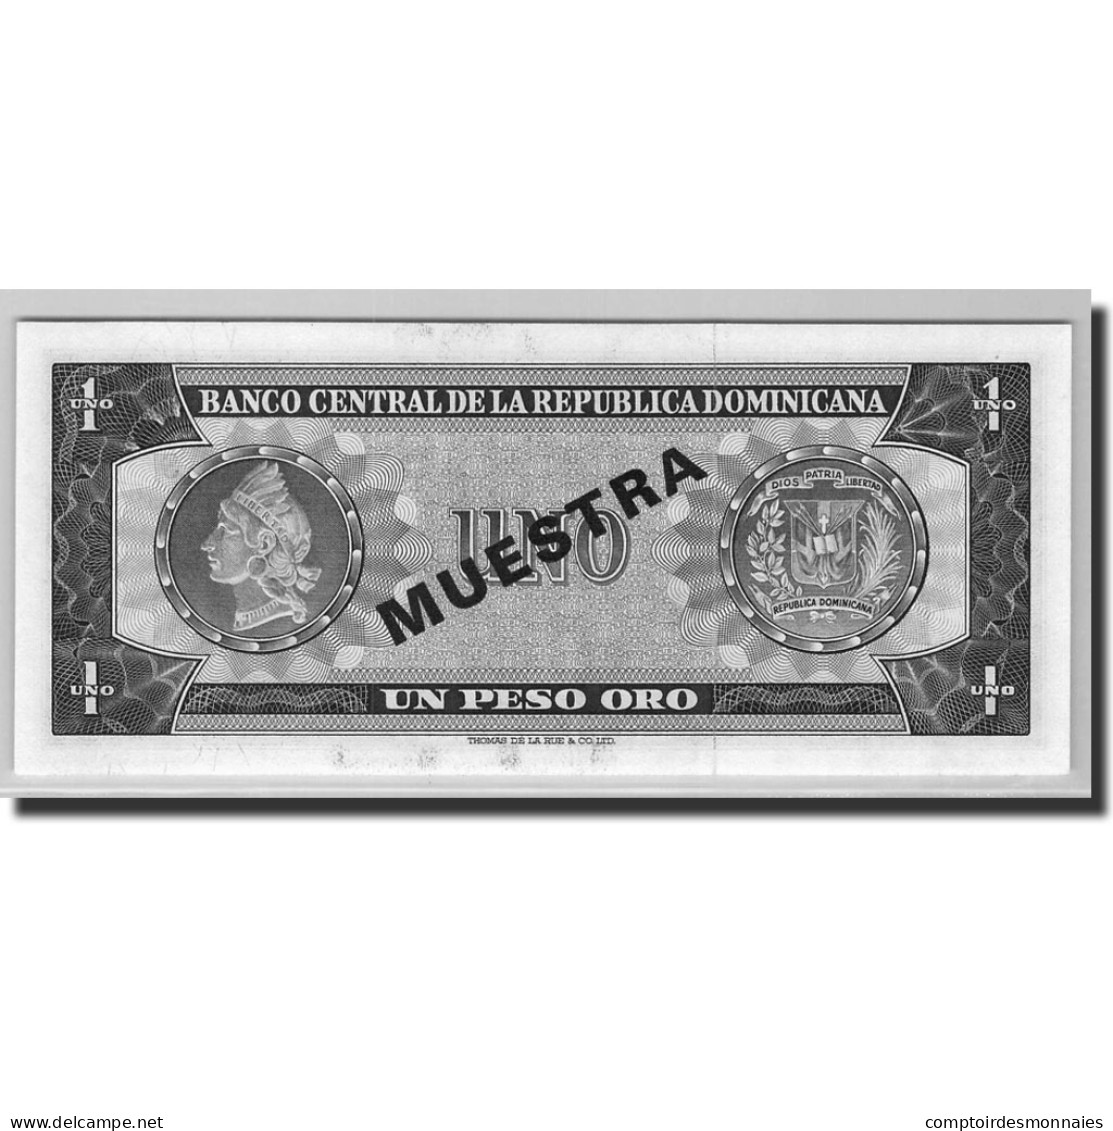 Billet, Dominican Republic, 1 Peso Oro, 1964-73, 1964, KM:99s3, NEUF - Dominicana